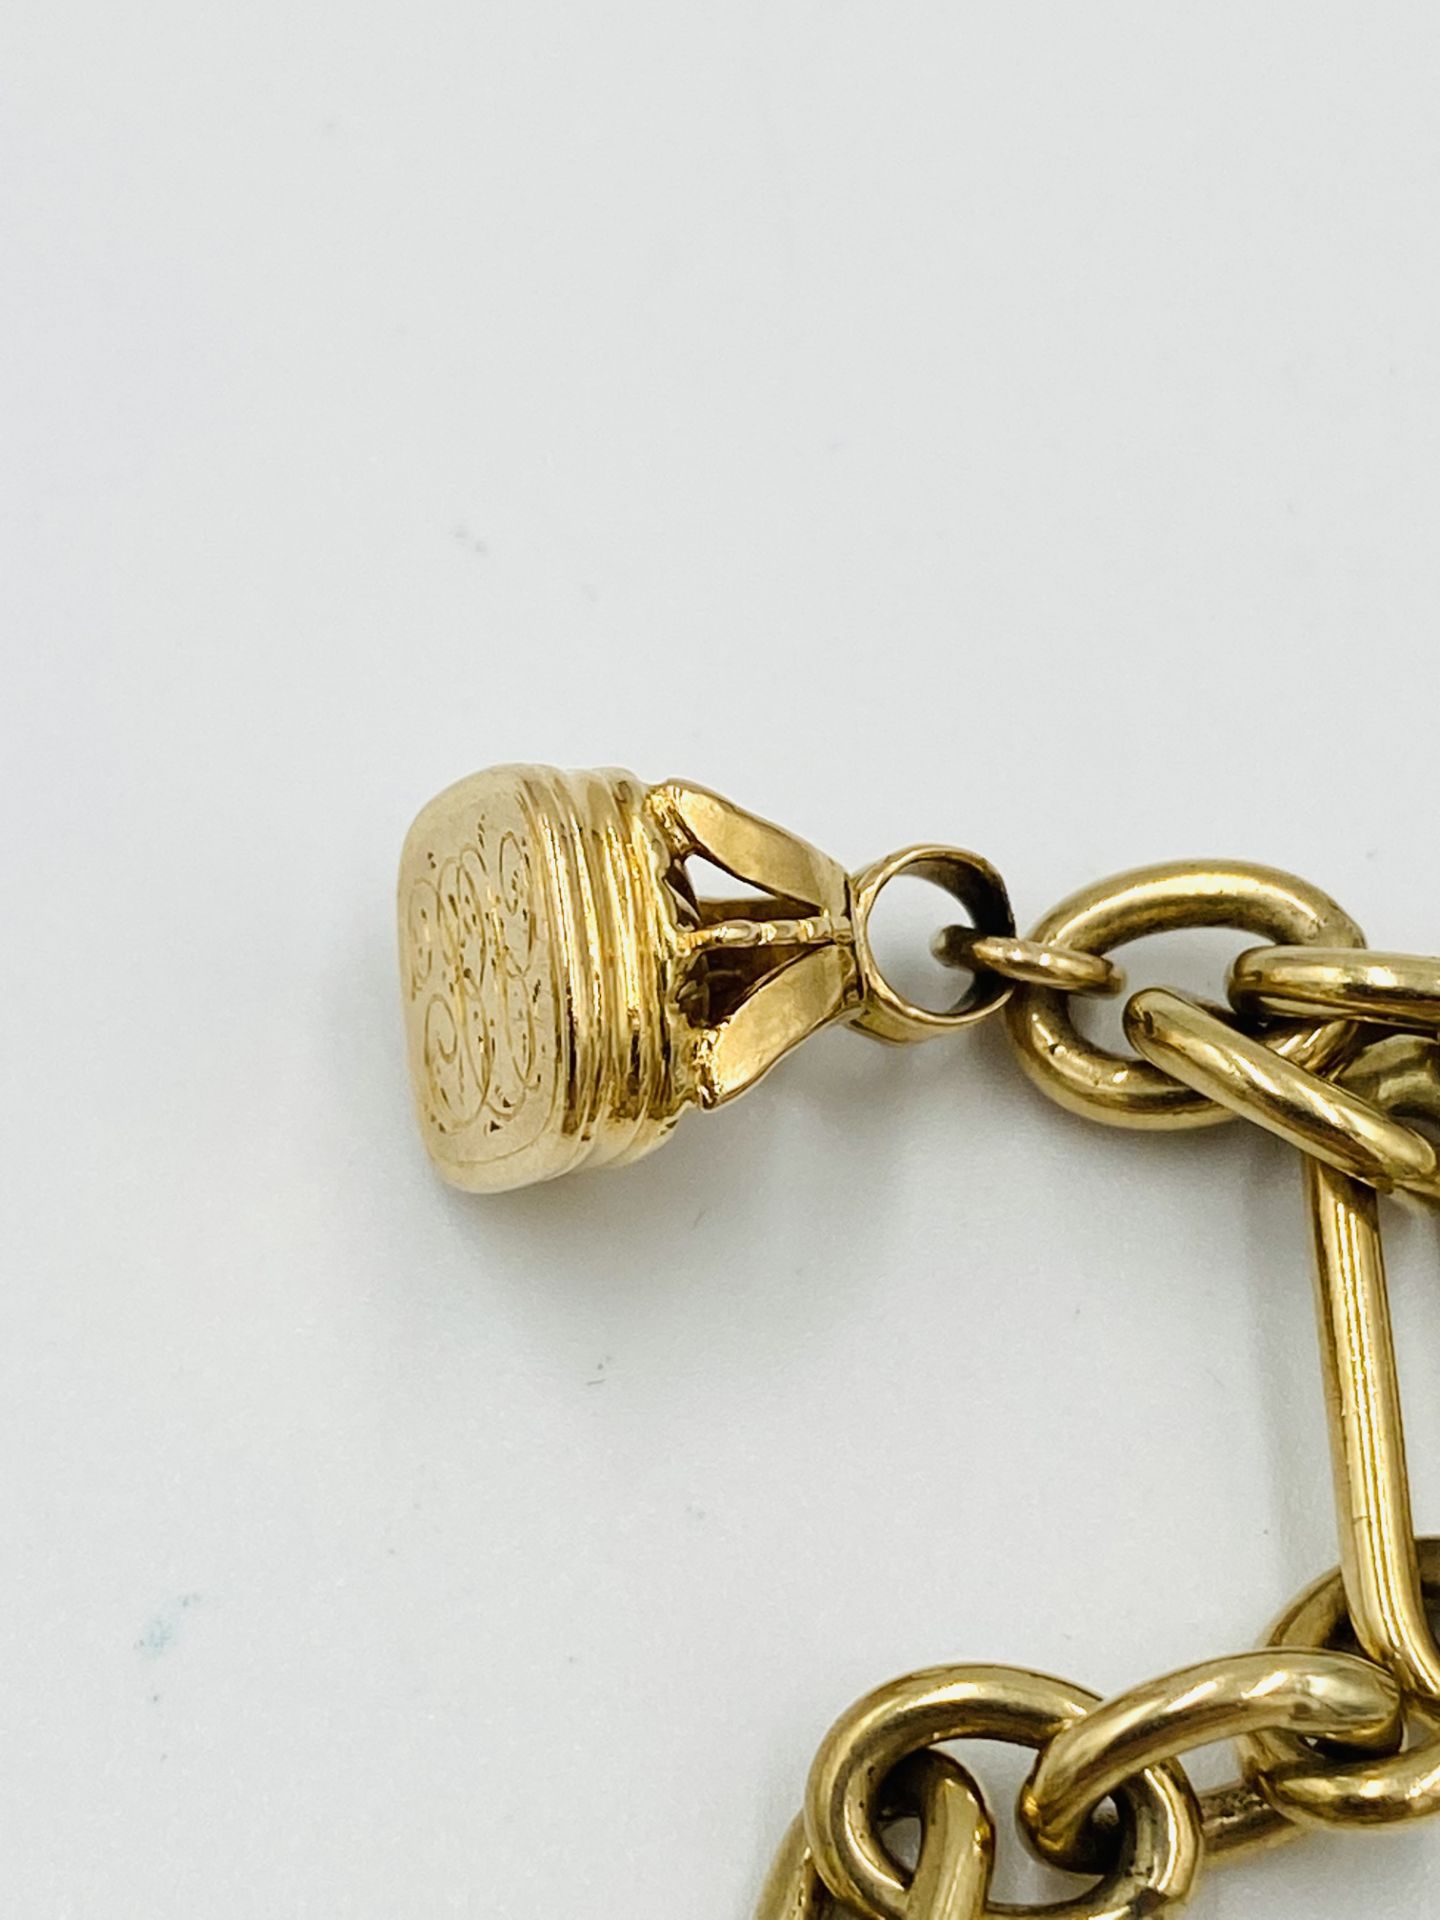 9ct gold long link charm bracelet - Image 4 of 6